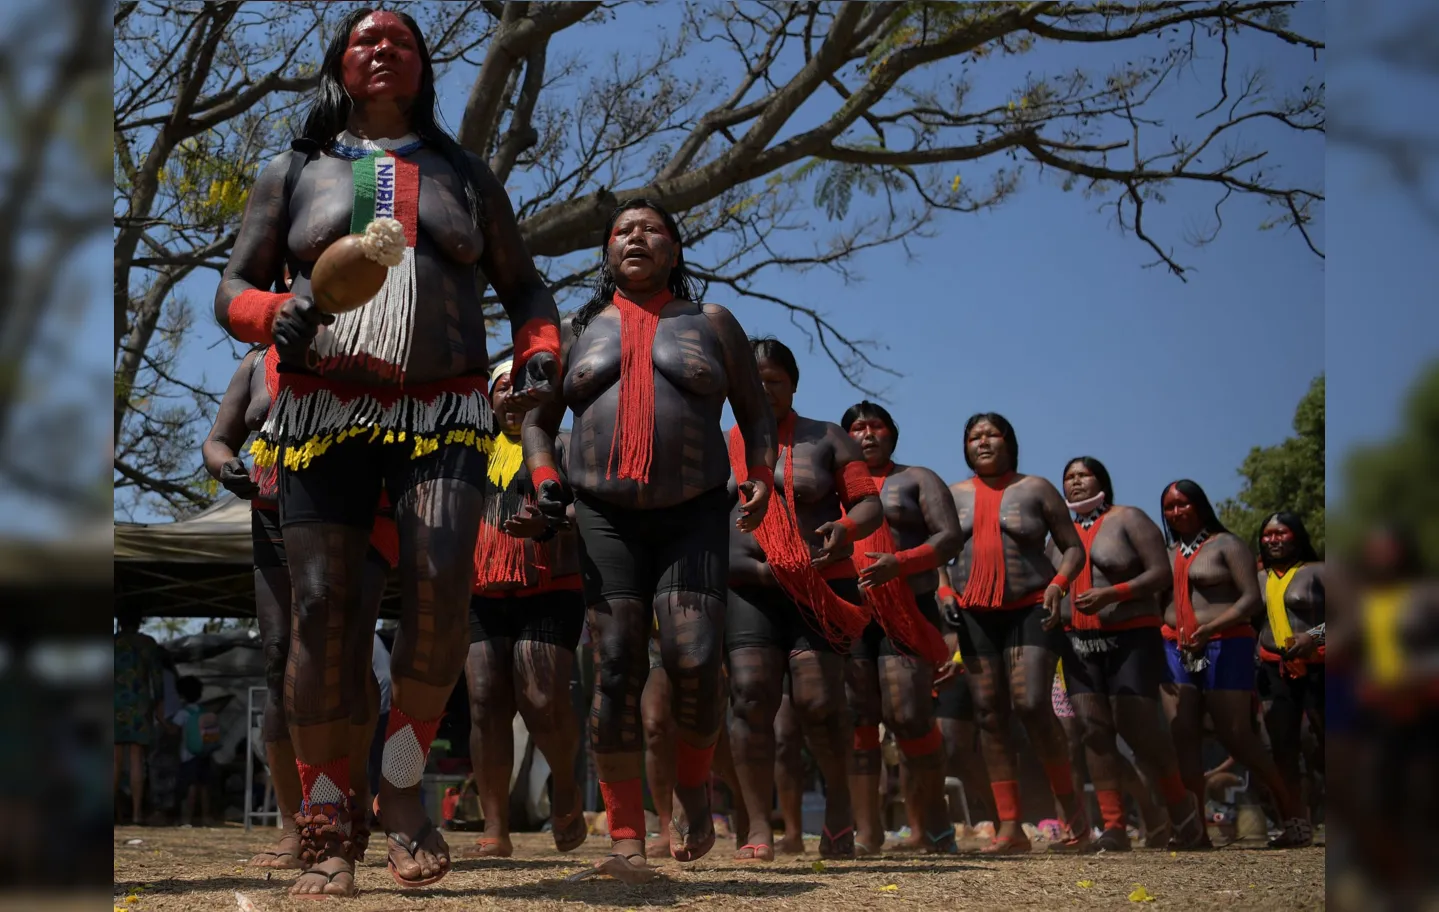 Indígenas sustentam que a Constituição reconhece seus direitos sobre suas terras ancestrais